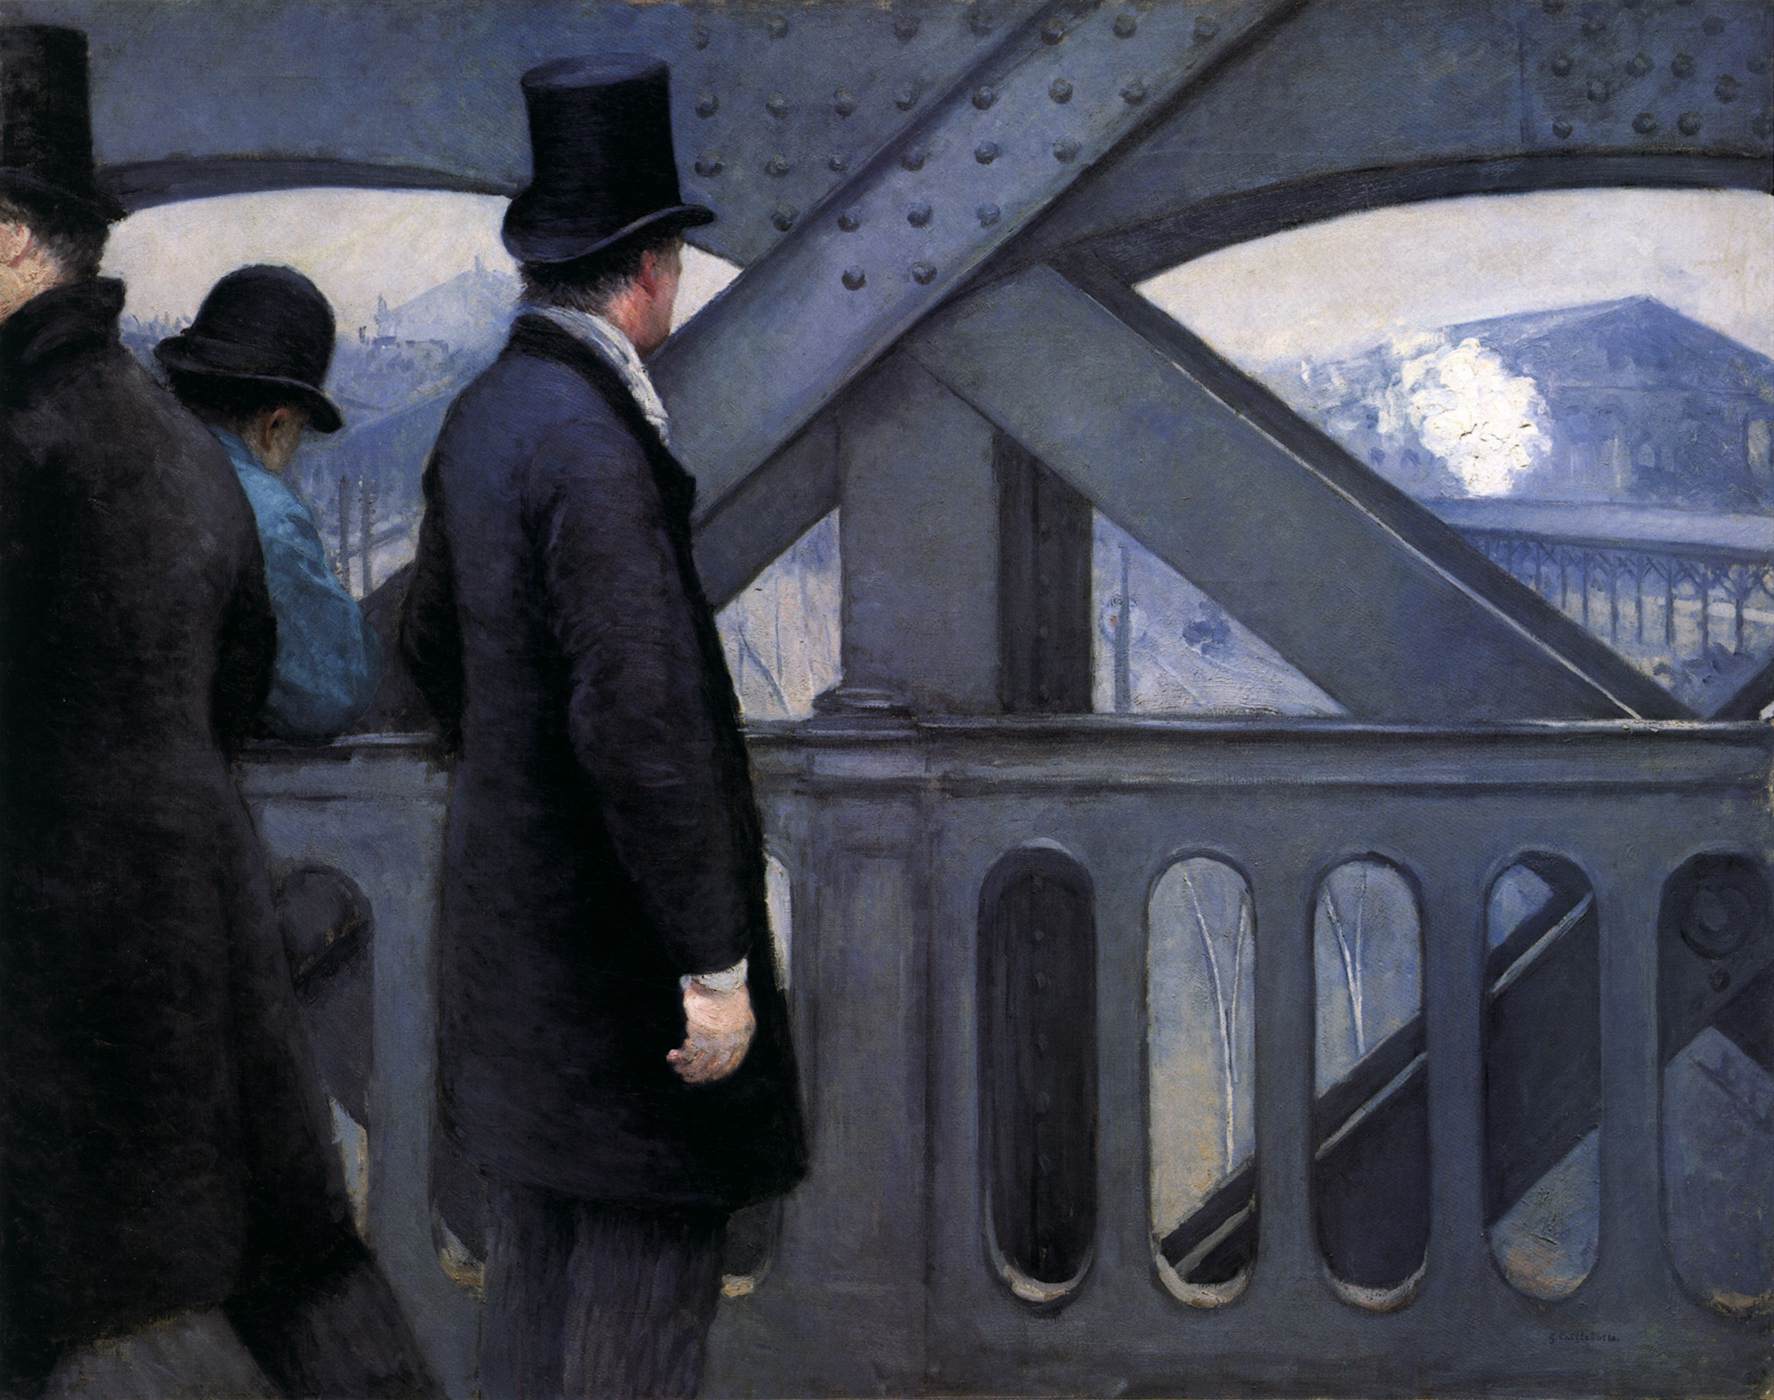 在歐洲橋上 by 古斯塔夫 卡耶博特 - 1876-77 - 105.7 x 130.8 cm 